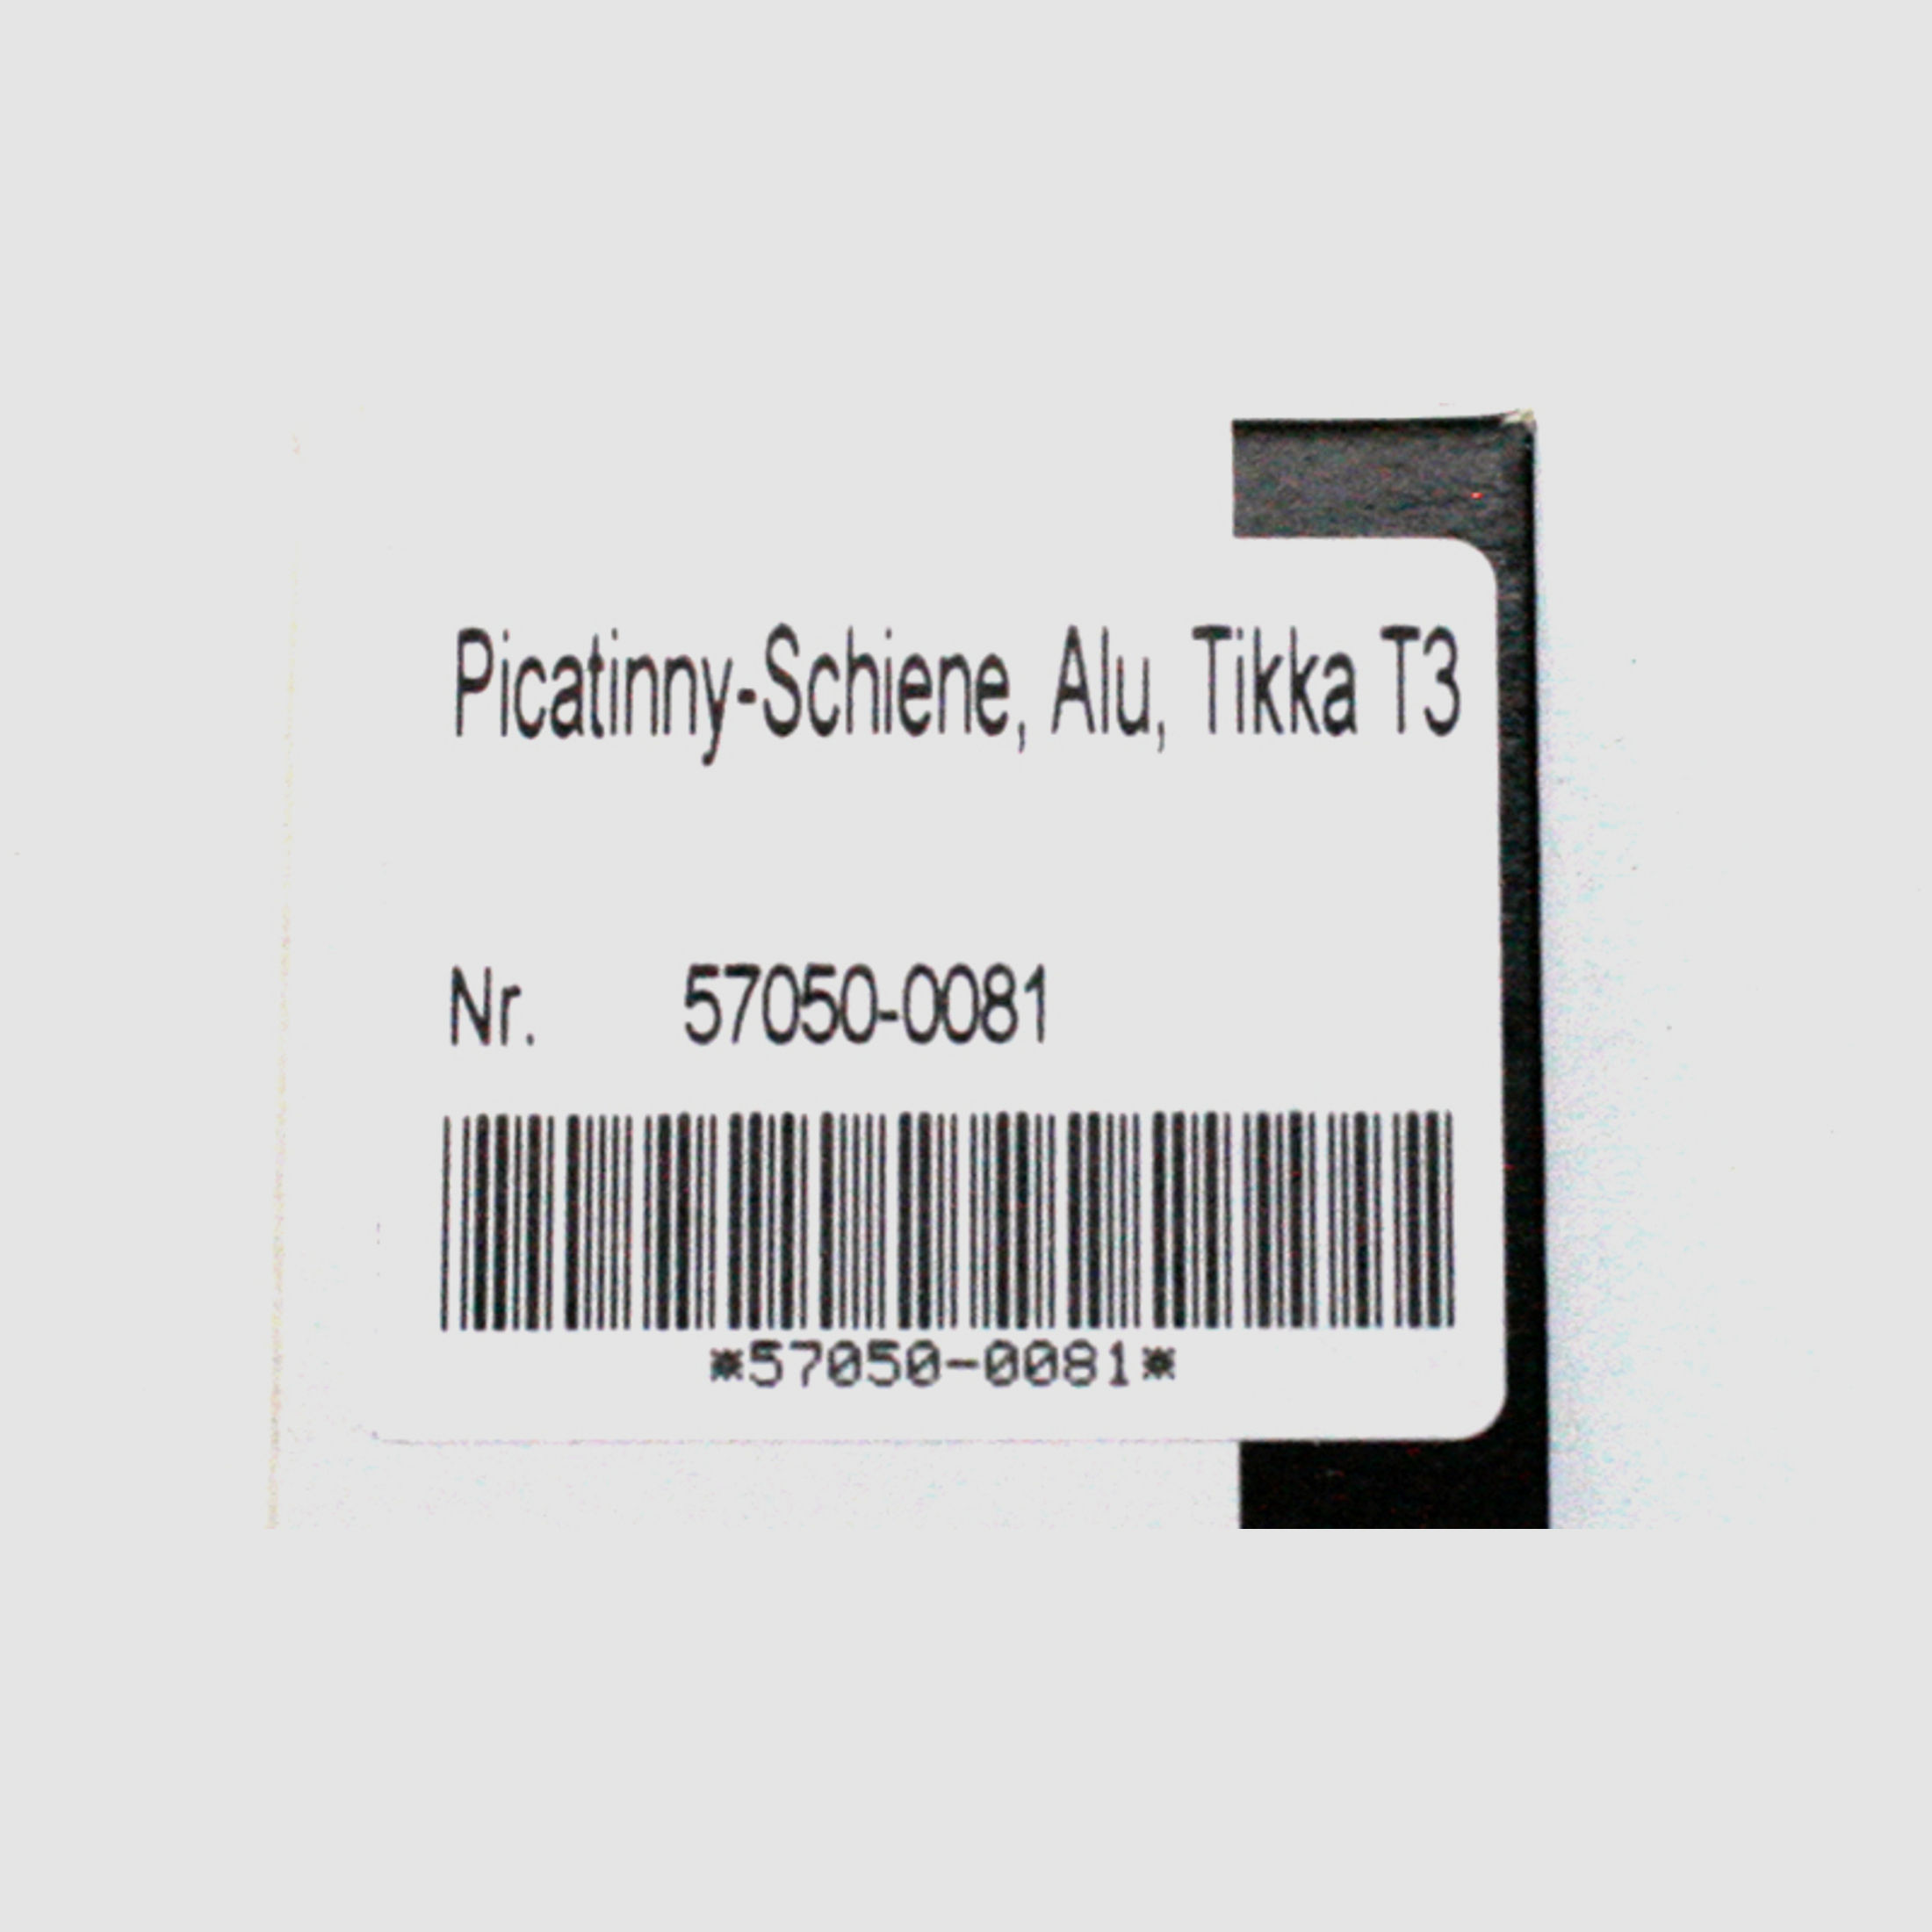 Recknagel (Weaver) Picatinny Schiene für TIKKA T3 X T3 Lite T 3 alle Kaliber inkl. Schrauben NEU!